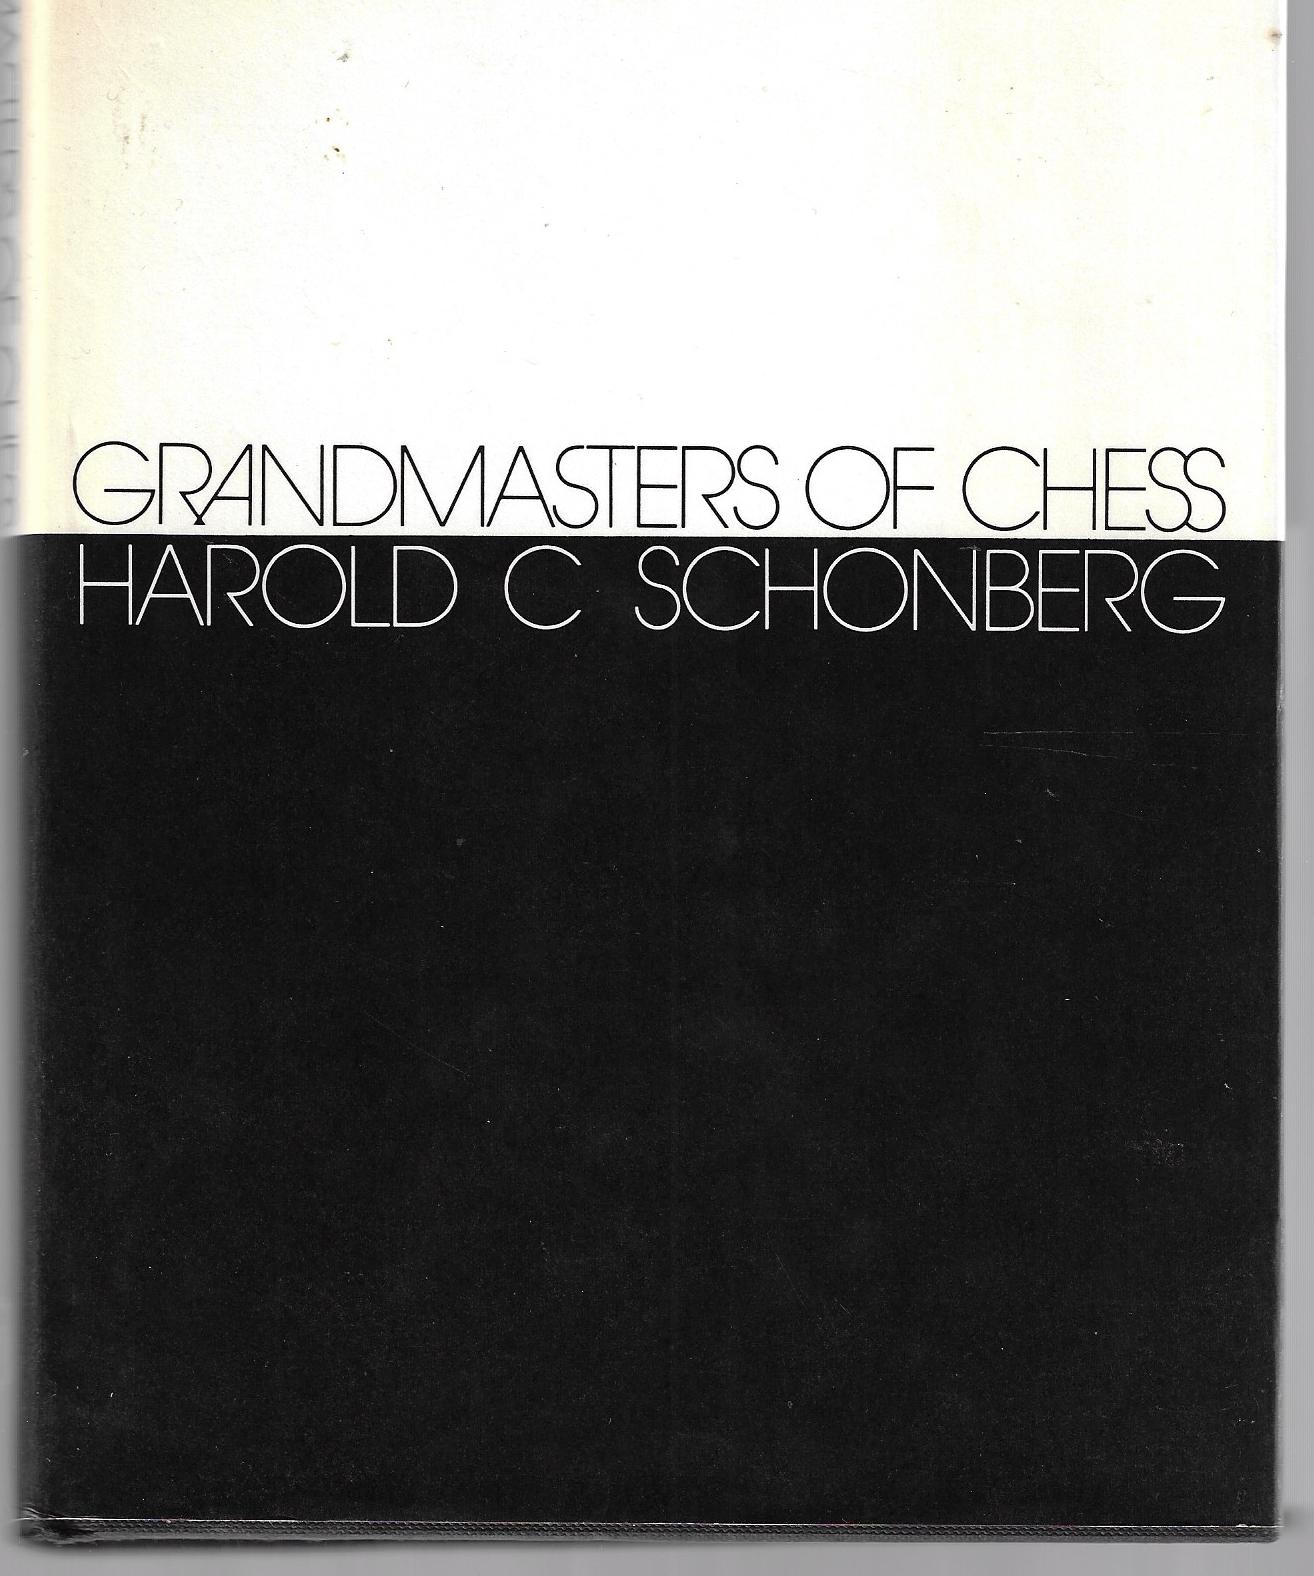 Schonberg, Harold - Grandmasters of chess